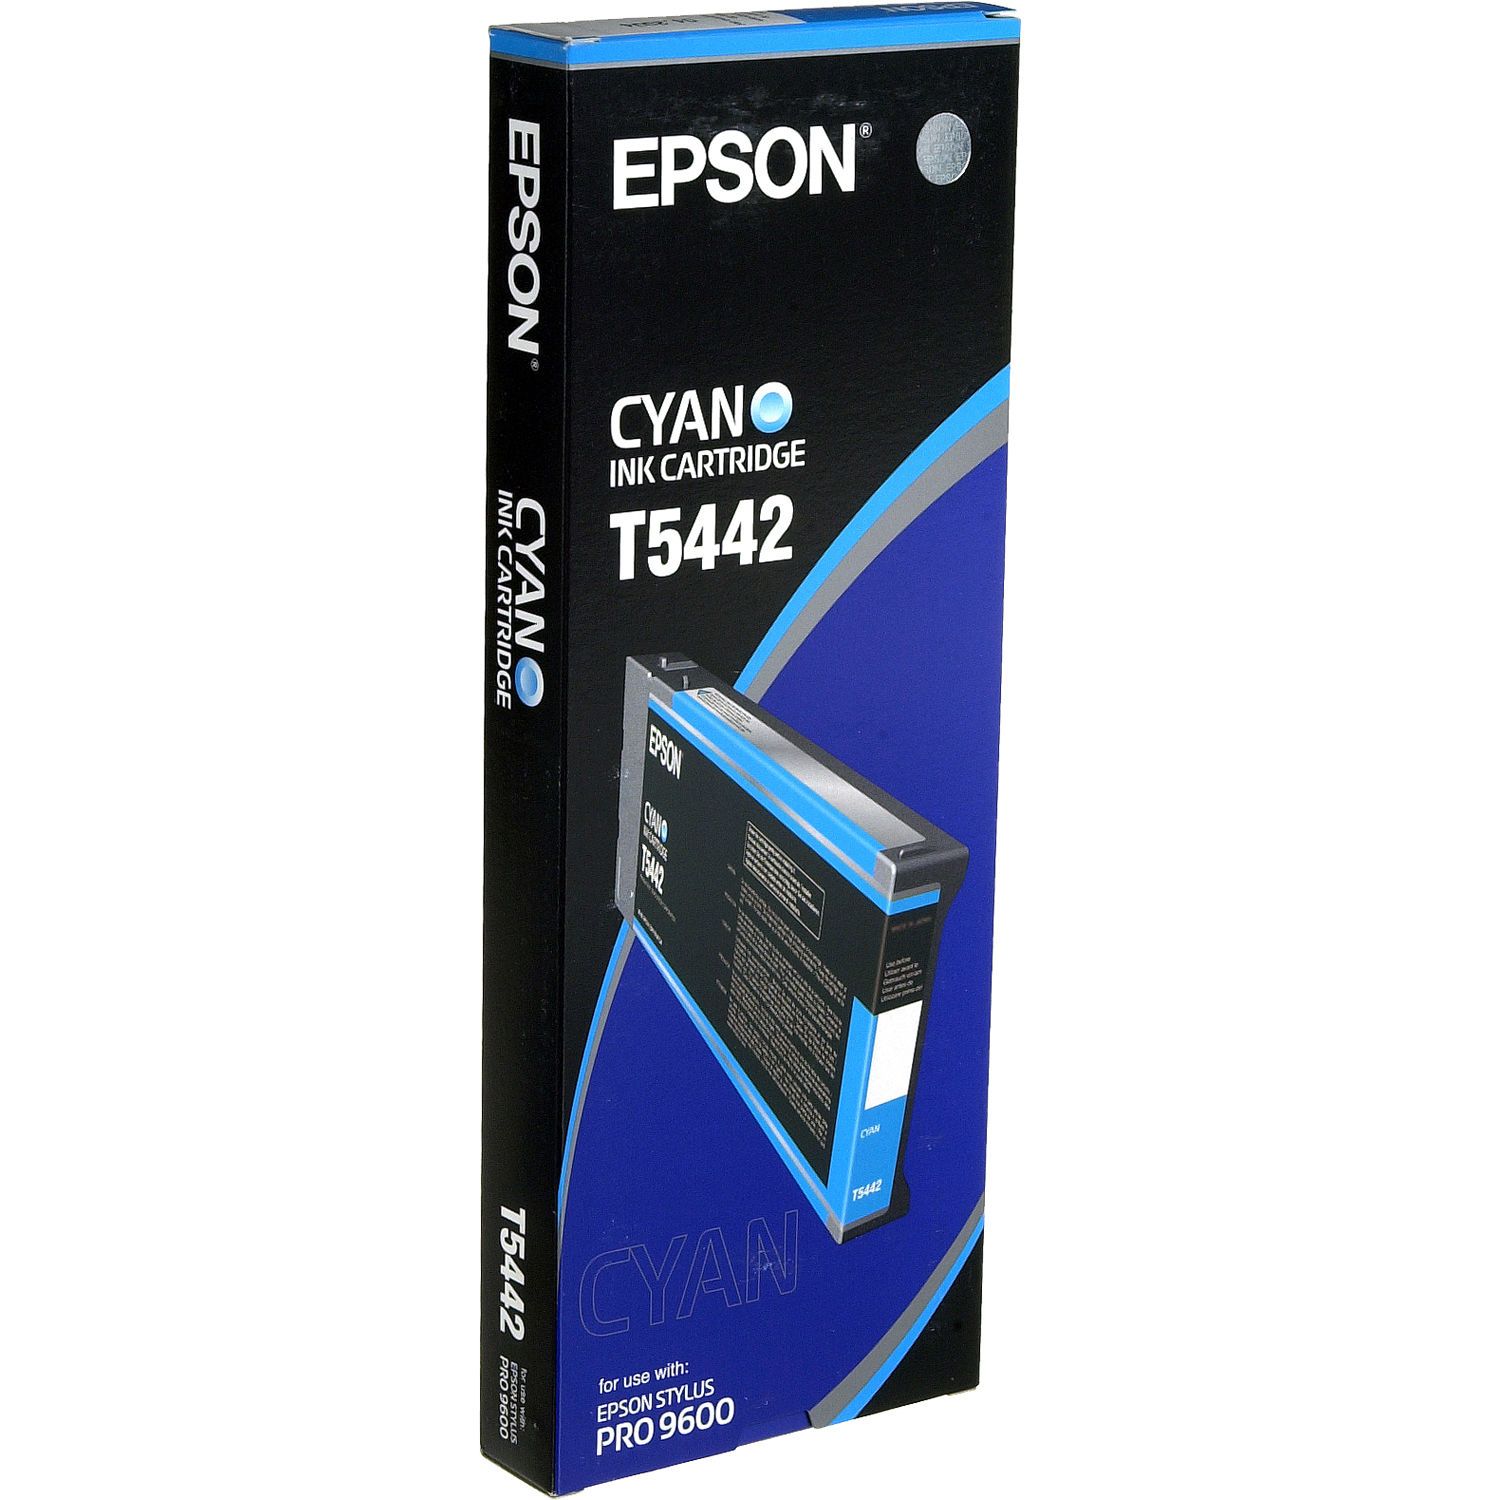 Absolute Toner Epson Original Genuine OEM Cyan Ink Cartridge | T544200 Original Epson Cartridge